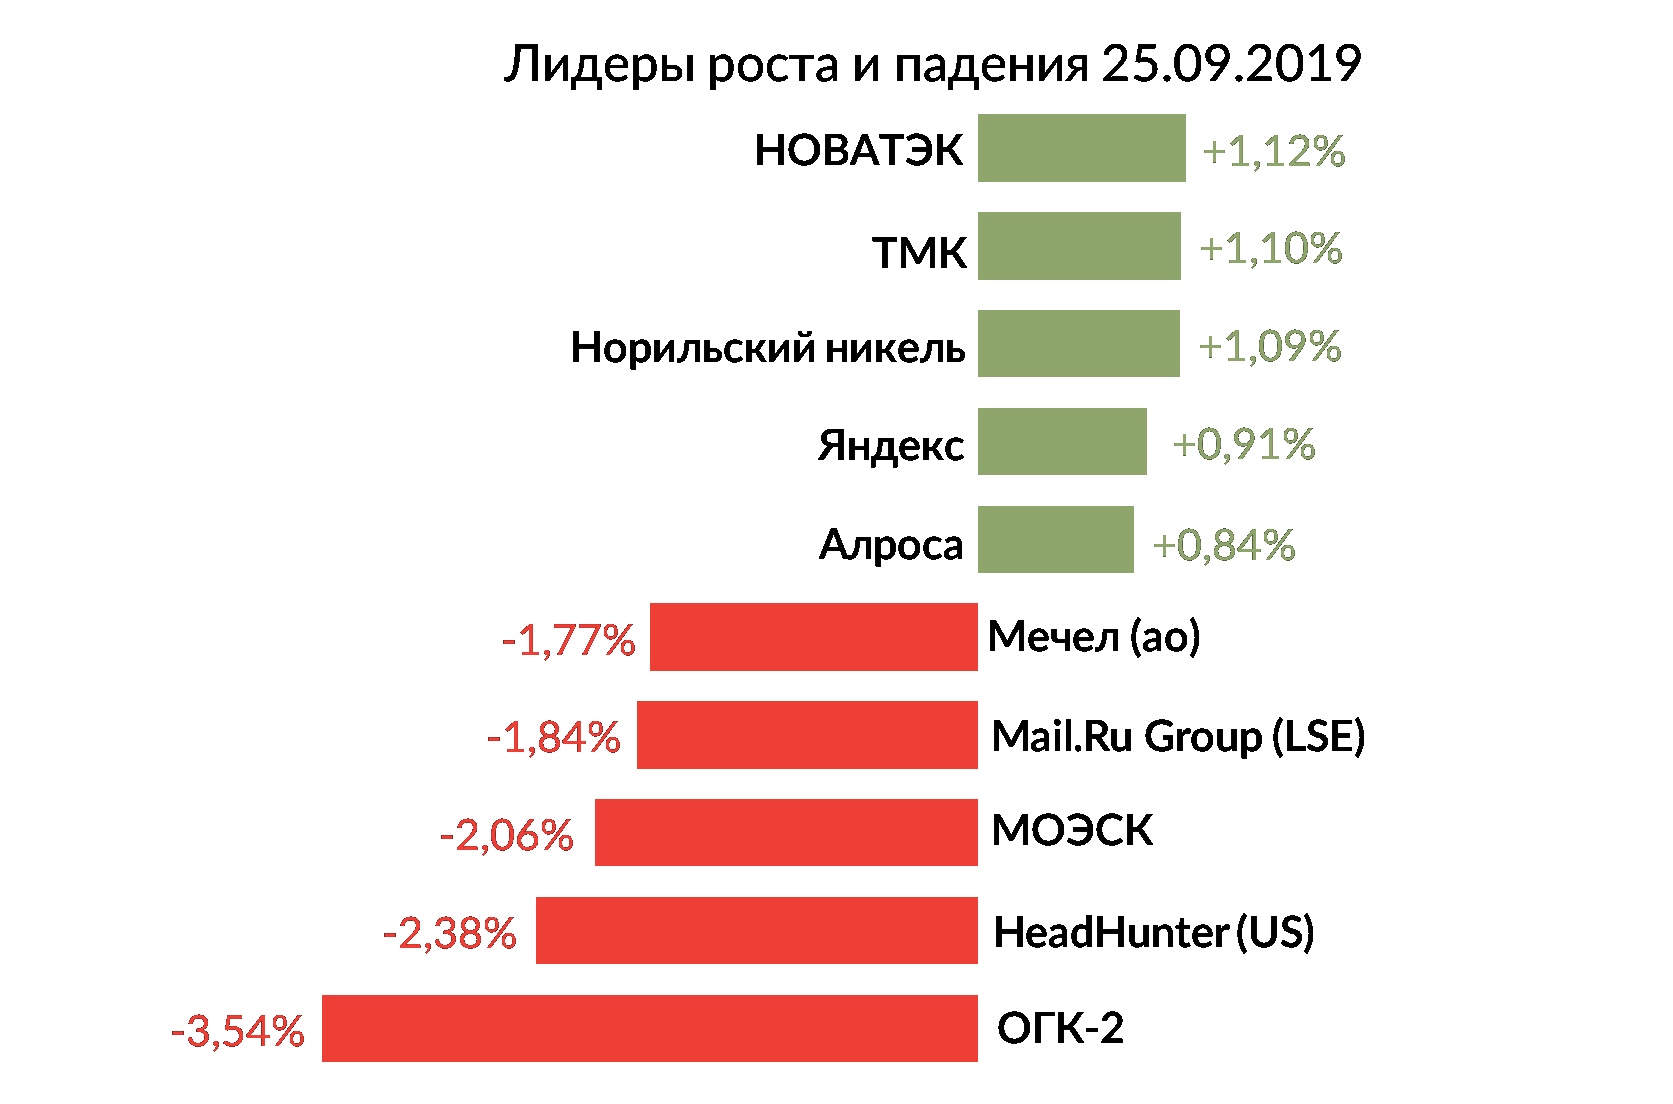 Лидеры роста и падения российского рынка на 25 сентября